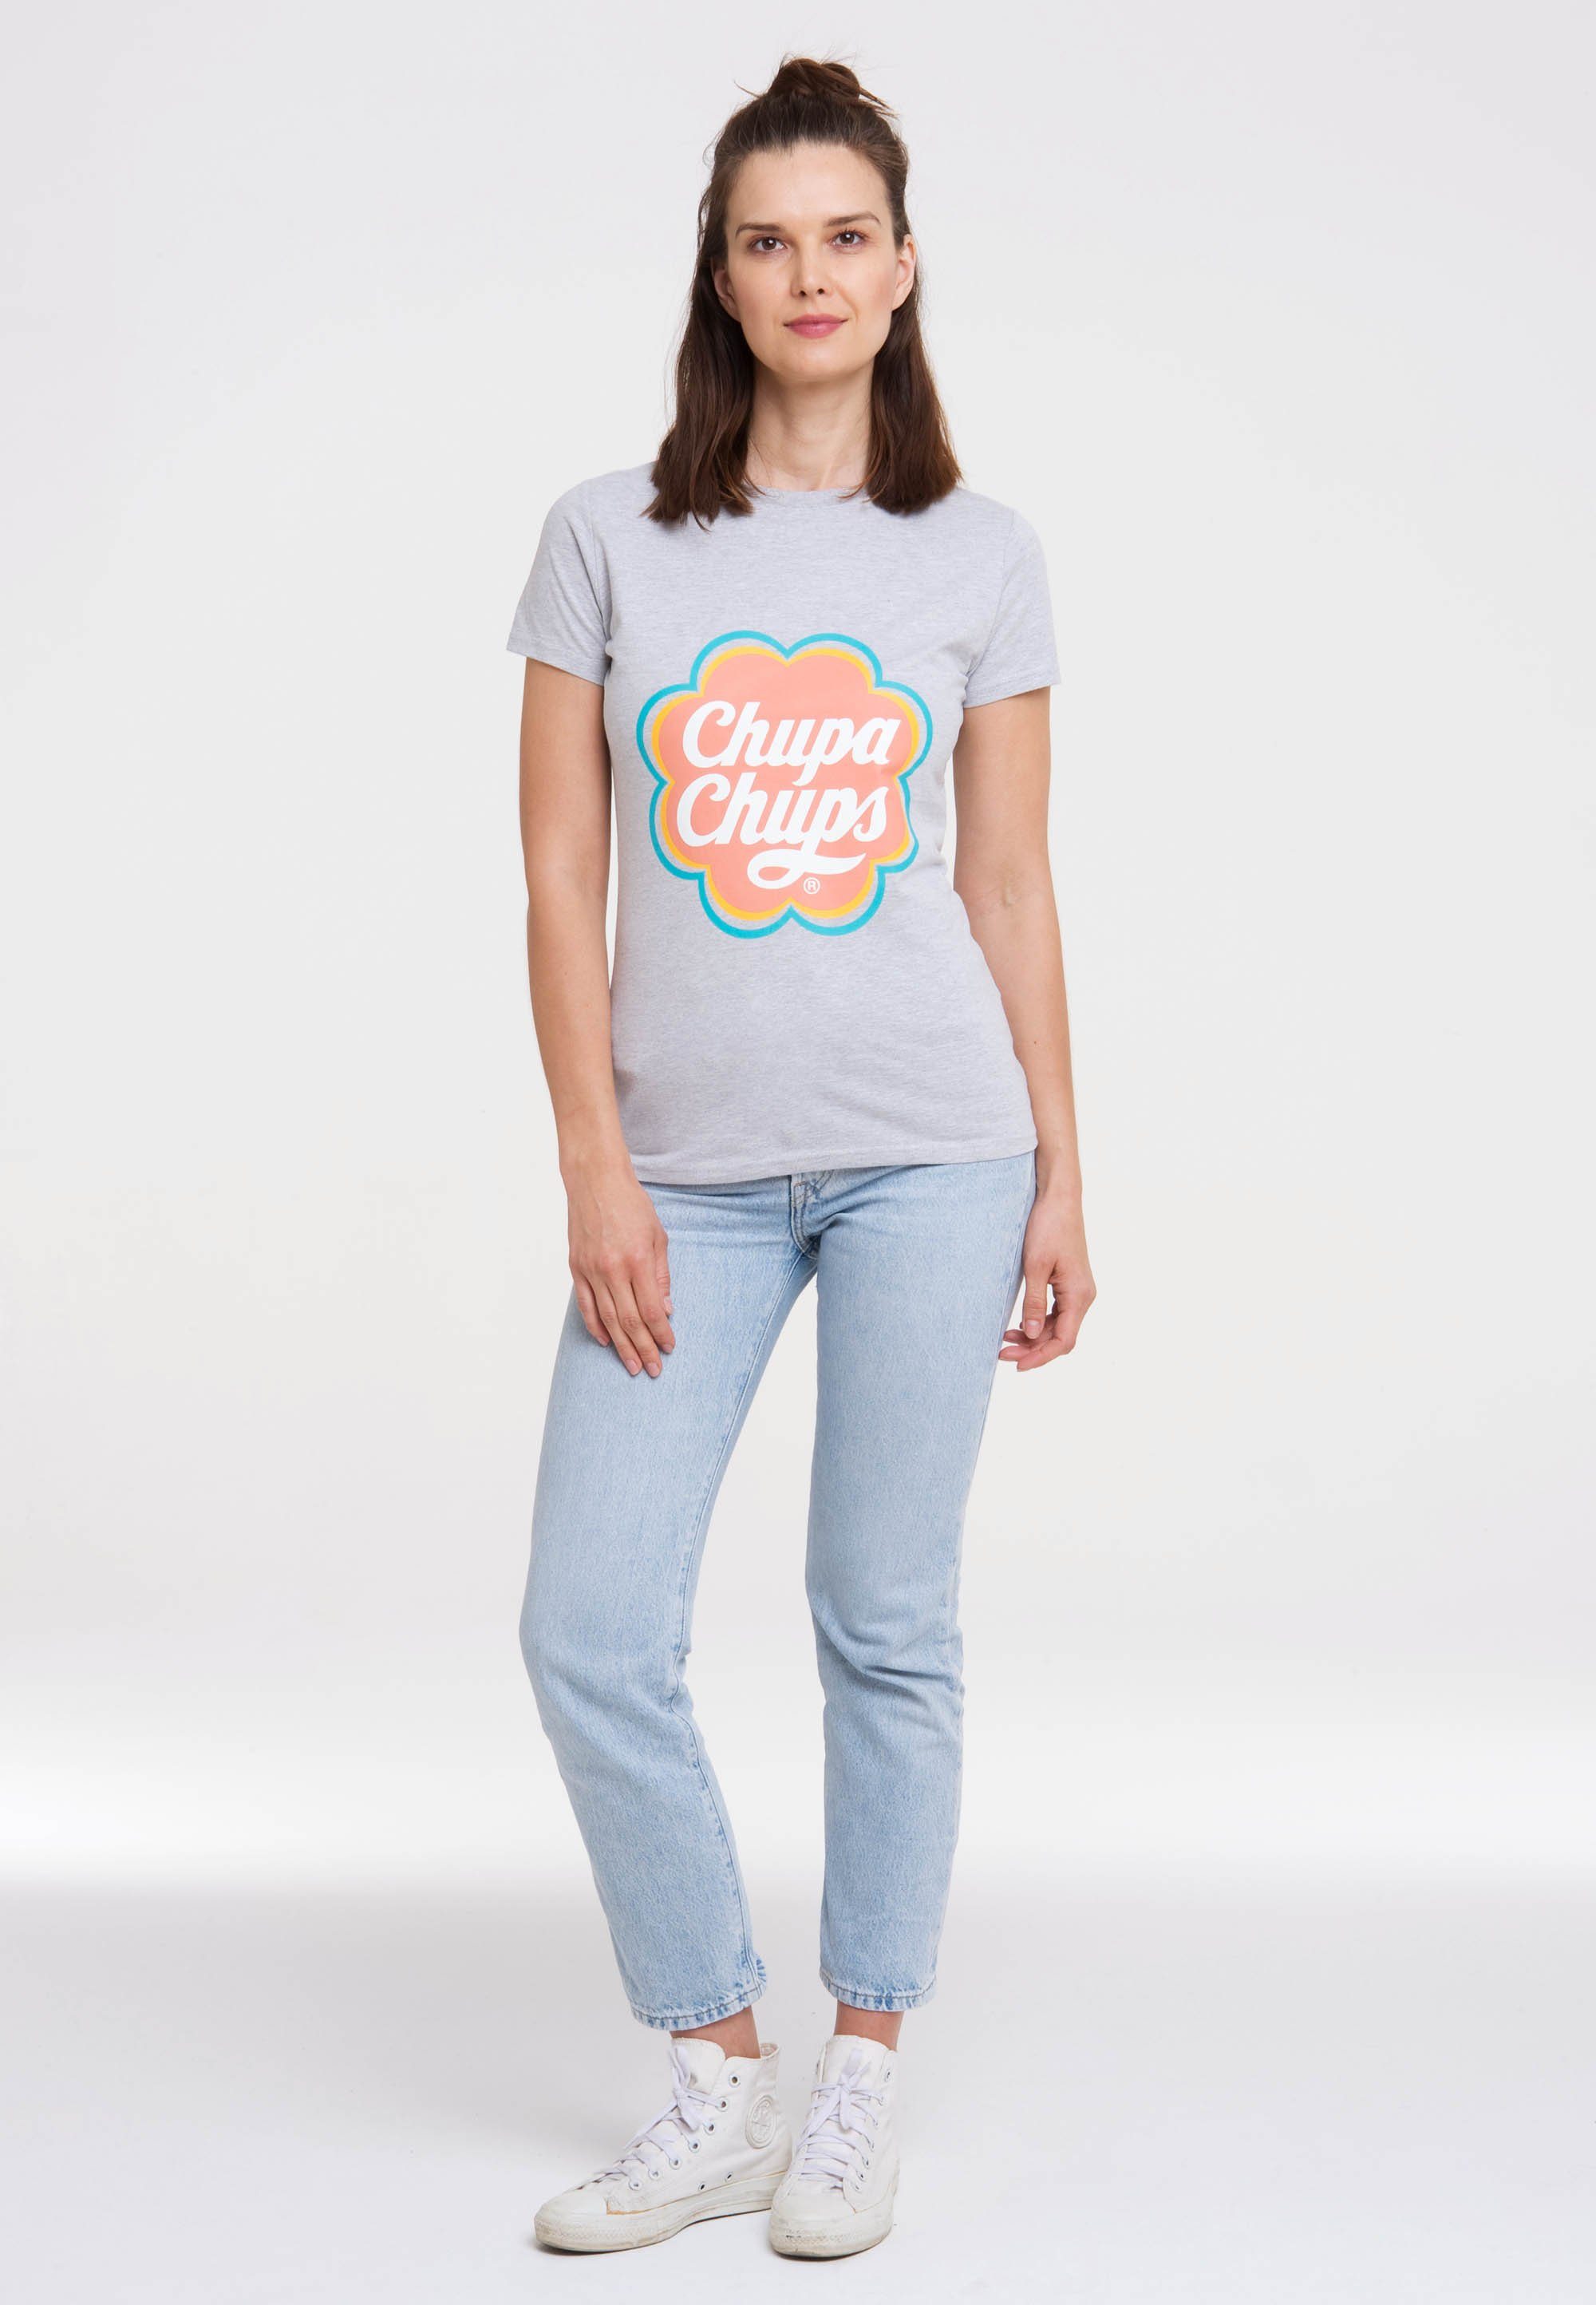 mit lizenzierten T-Shirt Chups LOGOSHIRT Design Chupa